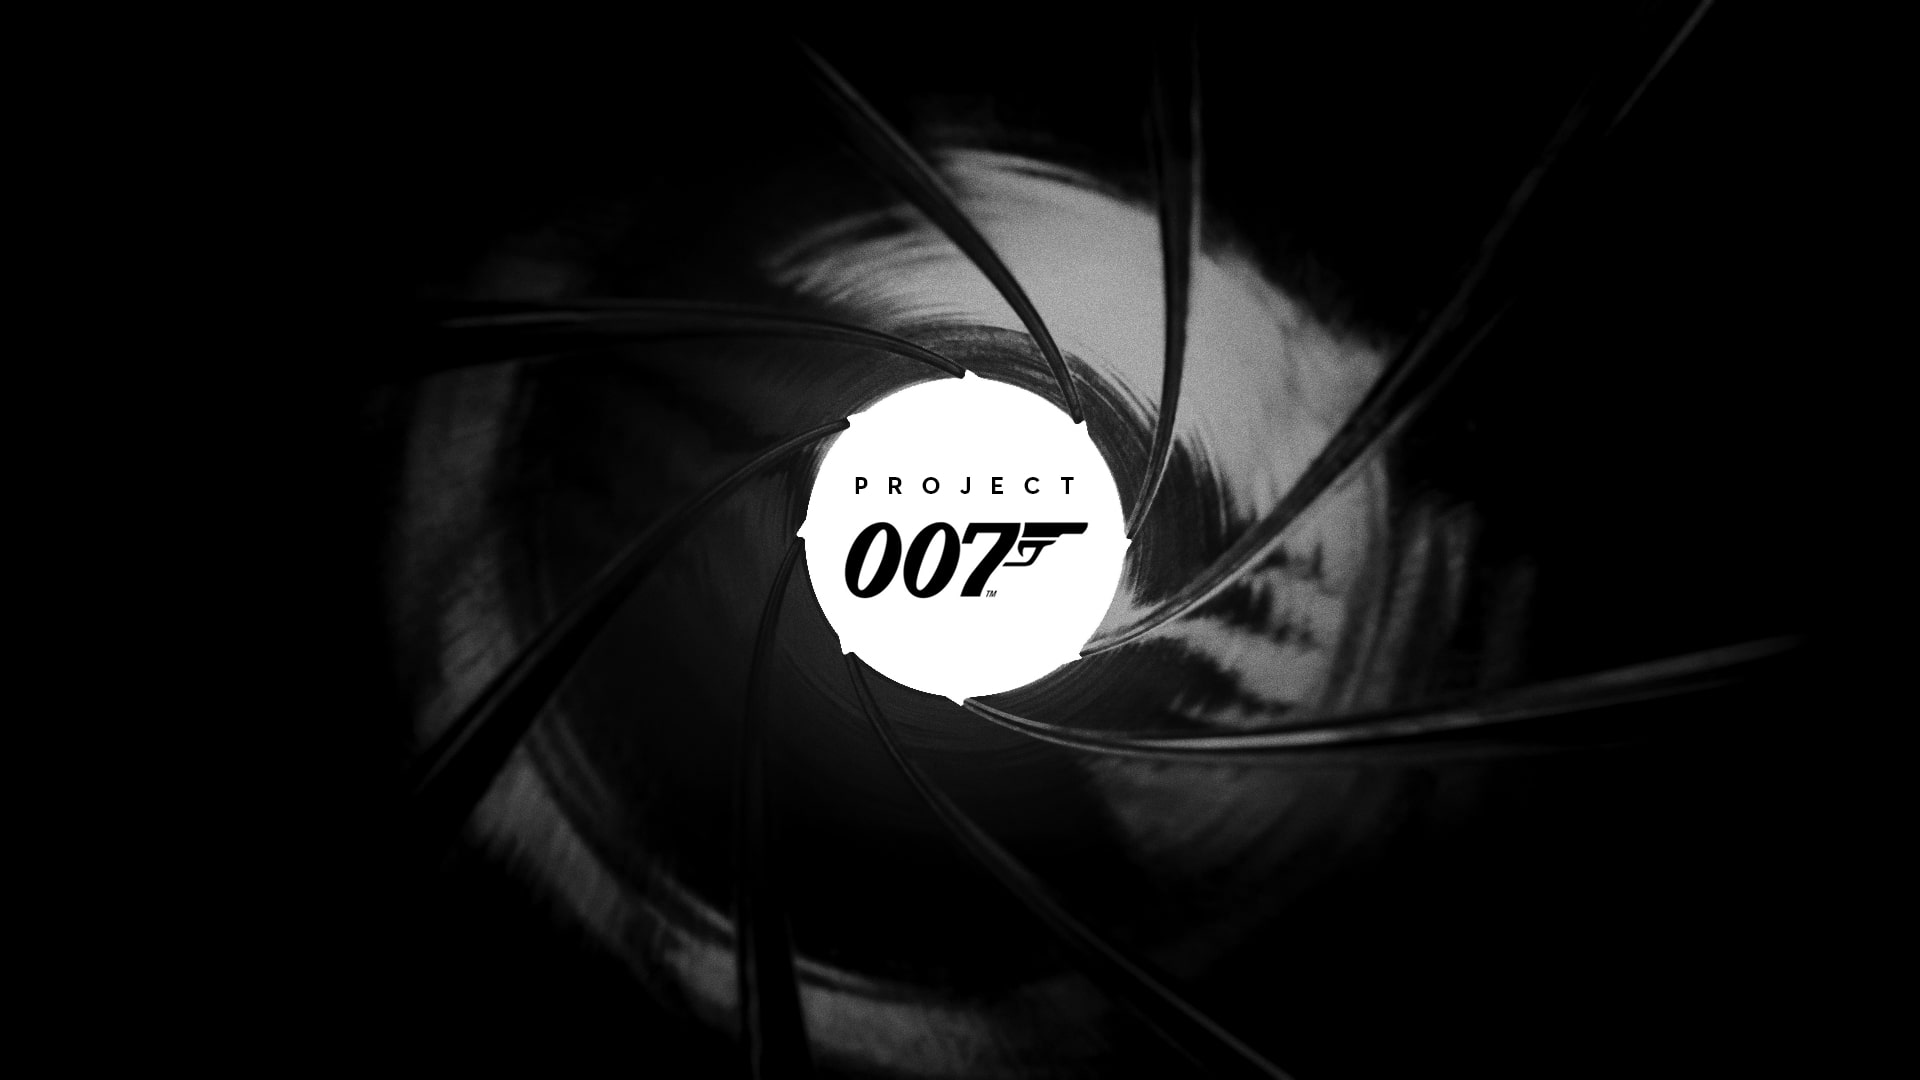 جزئیات جدیدی از بازی Project 007 دریافت شد